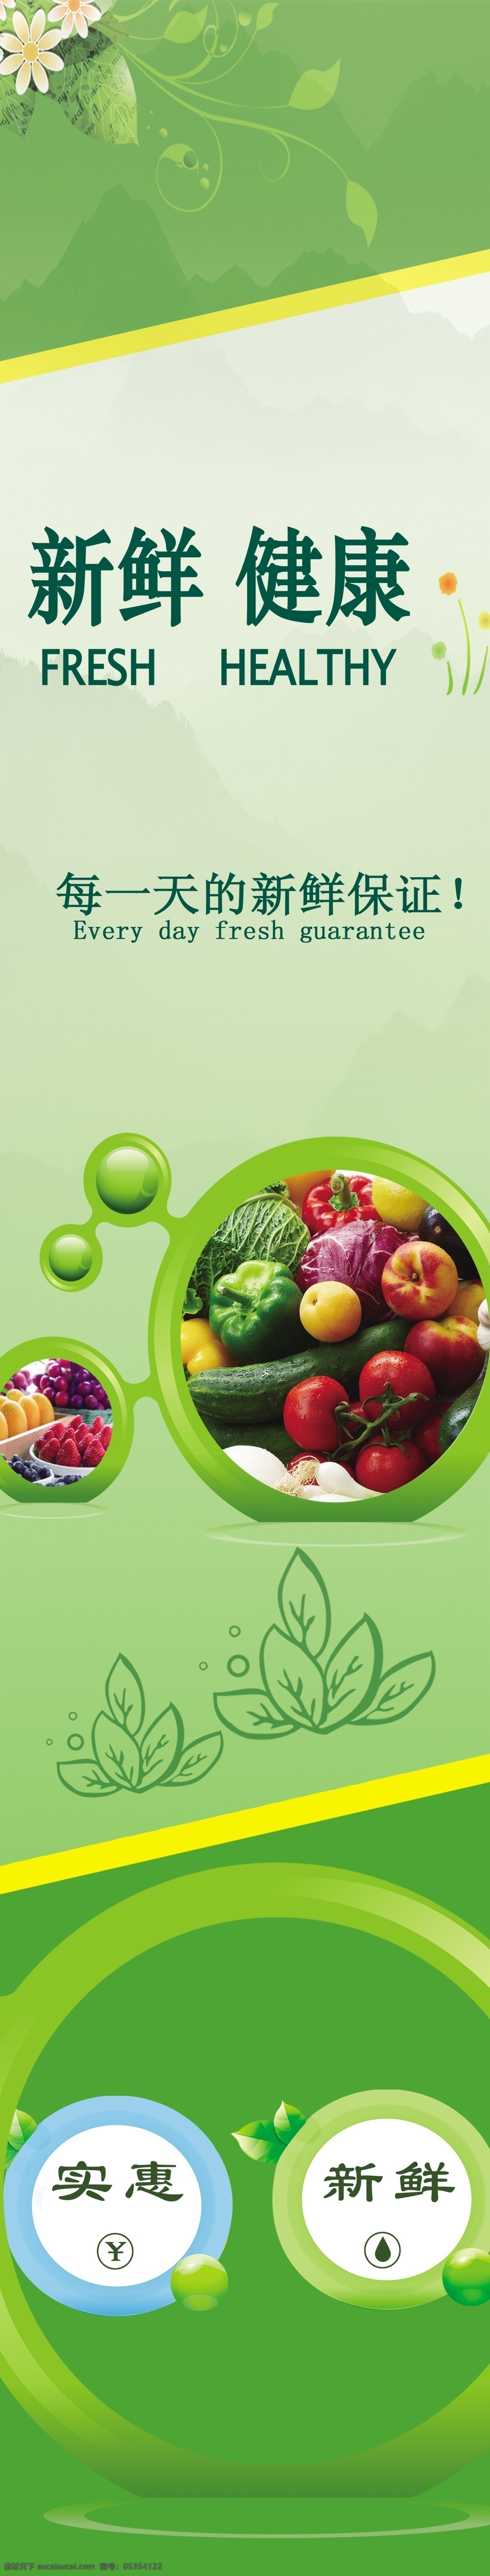 超市果蔬 水果 蔬菜 超市展板 绿色背景 果蔬展板